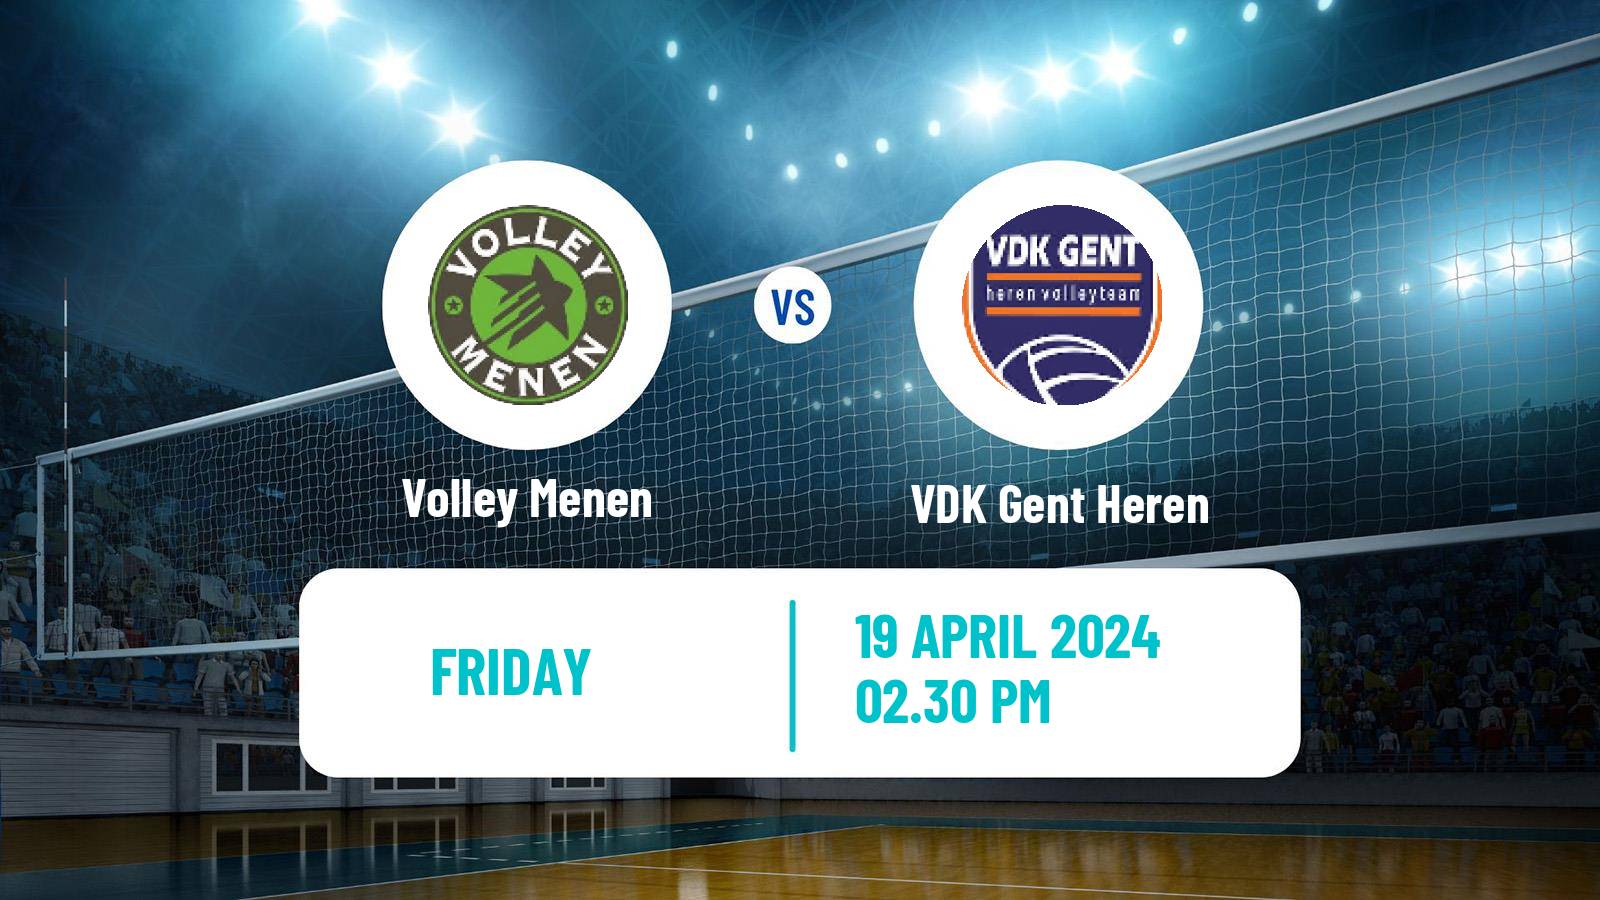 Volleyball Belgian League Volleyball Menen - VDK Gent Heren